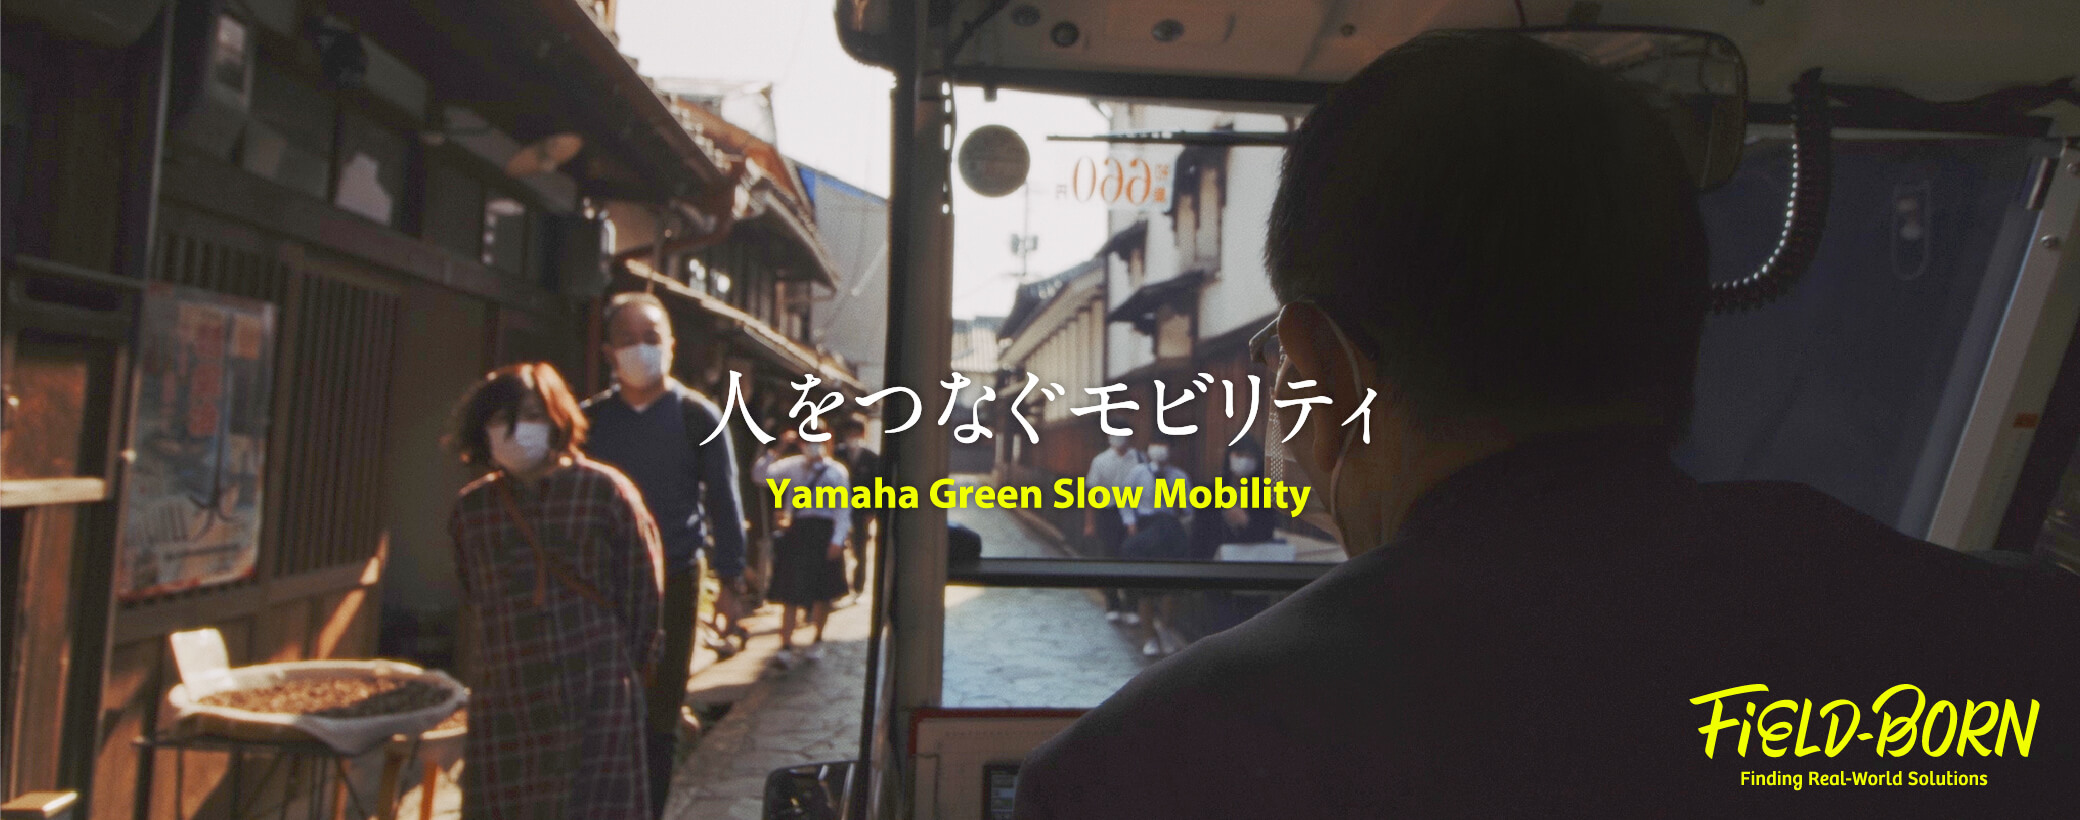 Field-Born 人をつなぐモビリティ Yamaha Green Slow Mobility